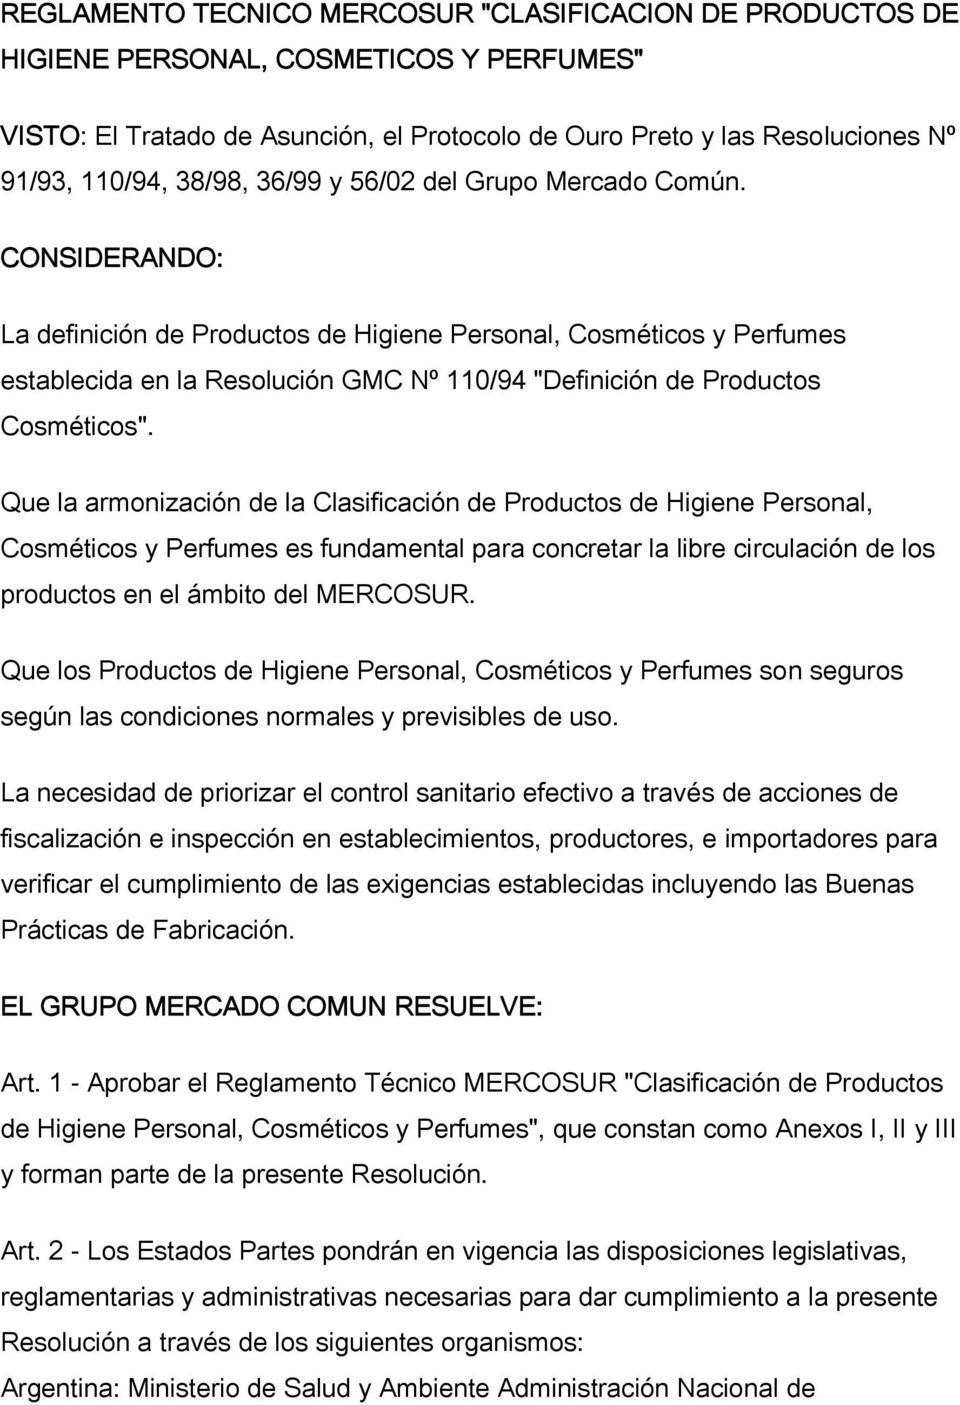 CONSIDERANDO: La definición de Productos de Higiene Personal, Cosméticos y Perfumes establecida en la Resolución GMC Nº 110/94 "Definición de Productos Cosméticos".